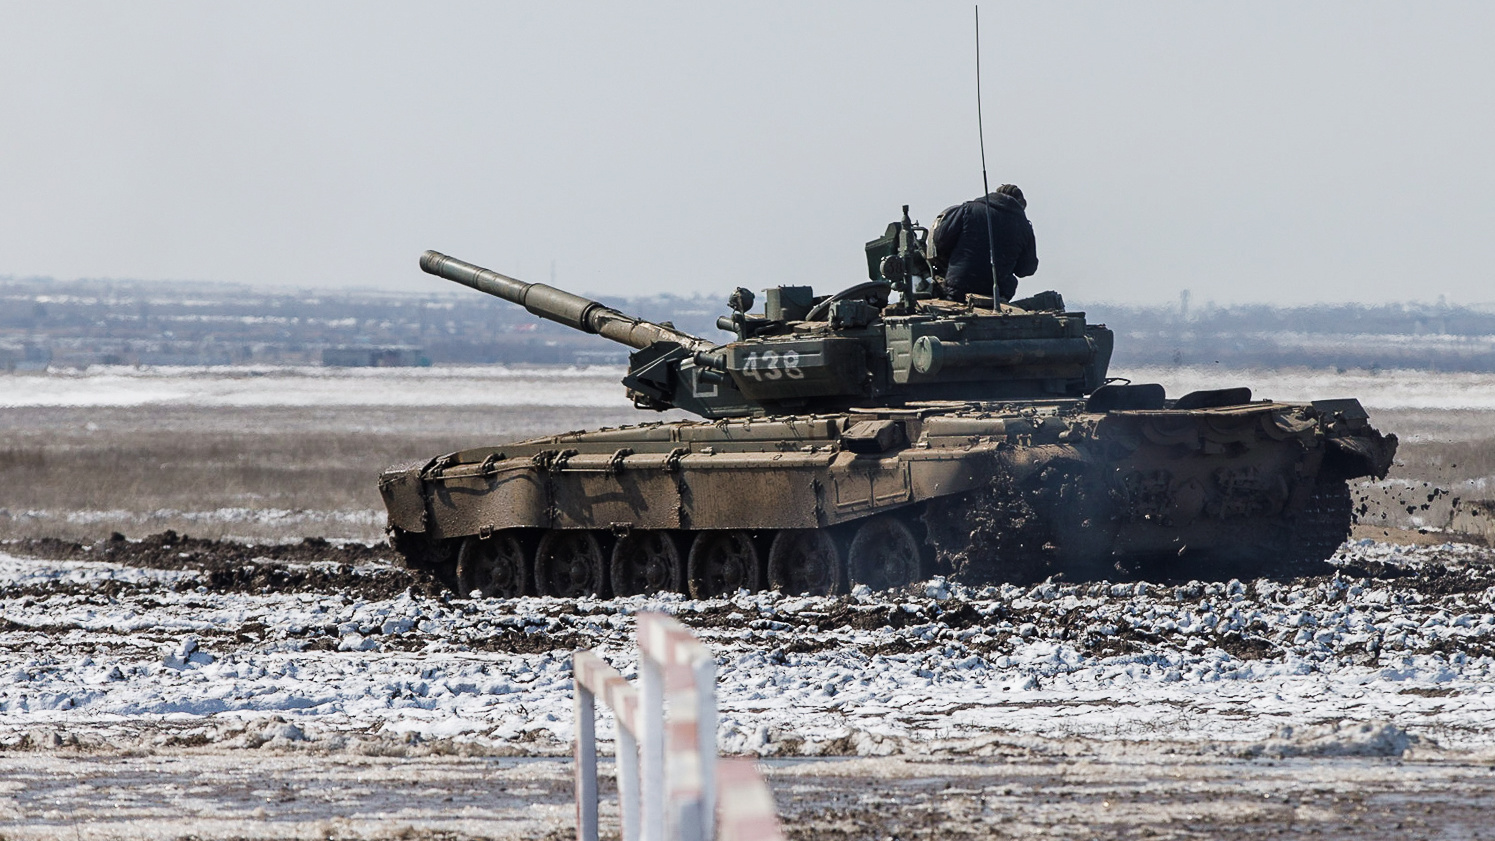 Европа и Британия собрались поставить Украине танки: главные новости вокруг СВО за 22 января